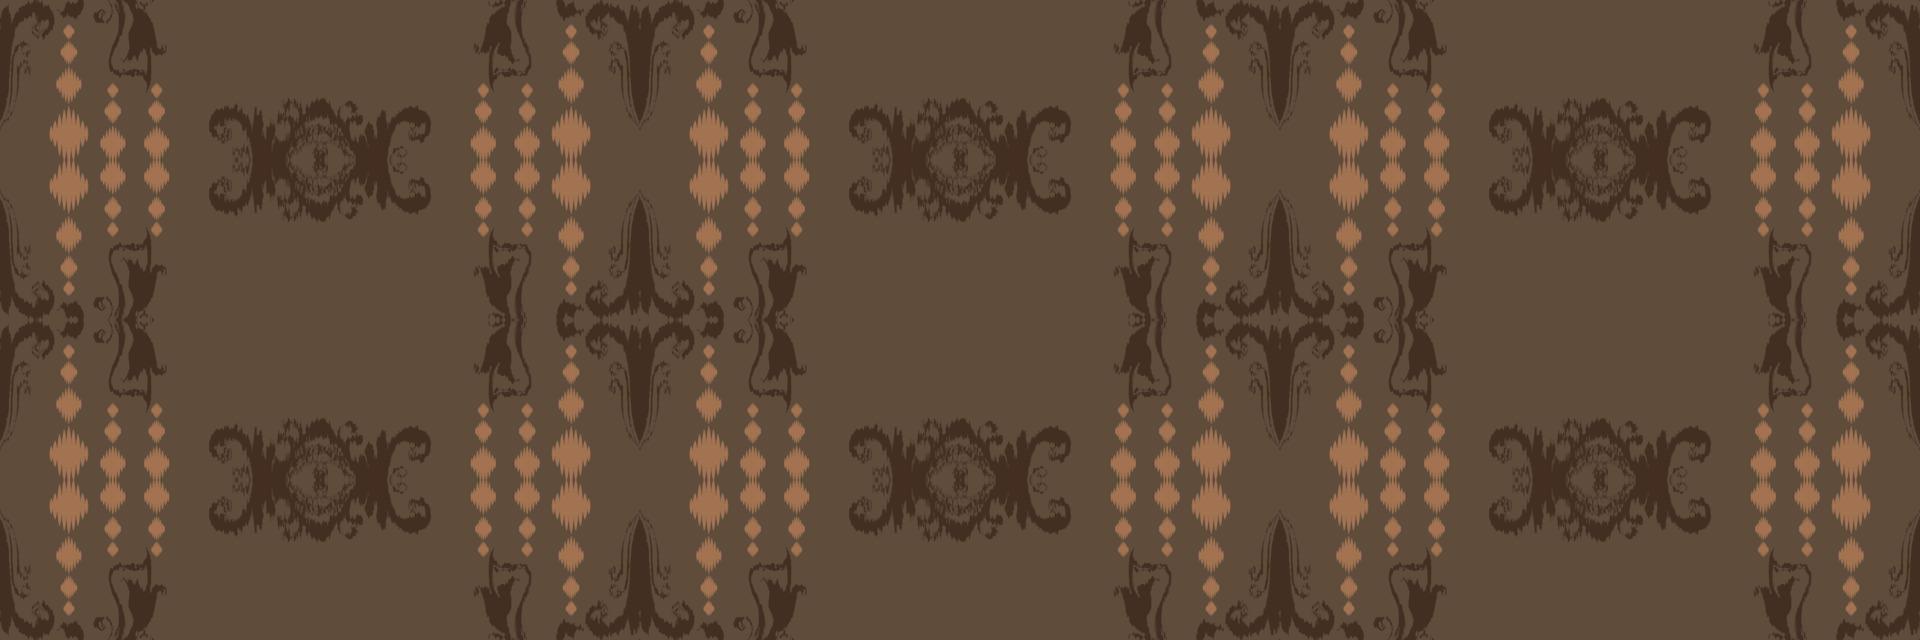 batik textil- motiv afrikansk ikat sömlös mönster digital vektor design för skriva ut saree kurti borneo tyg gräns borsta symboler färgrutor bomull